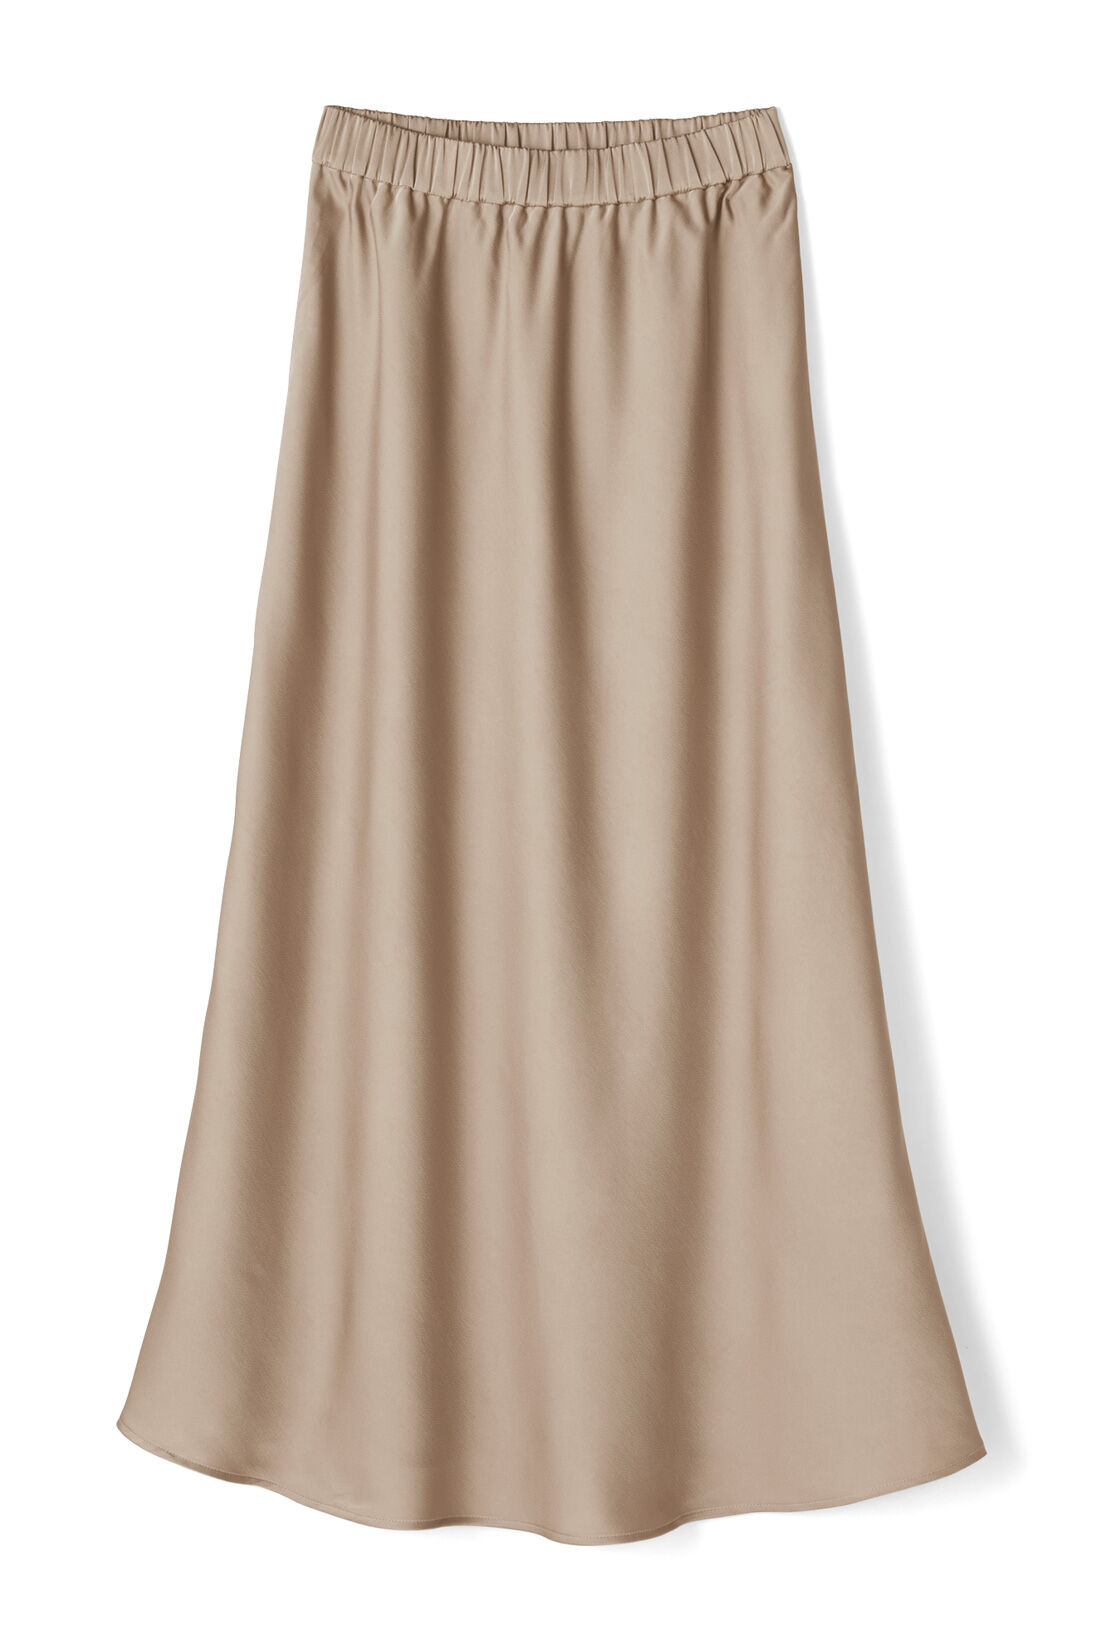 IEDIT[イディット]　サテンの光沢が美しいセミサーキュラースカート〈ディープブルー〉|〈ベージュ〉